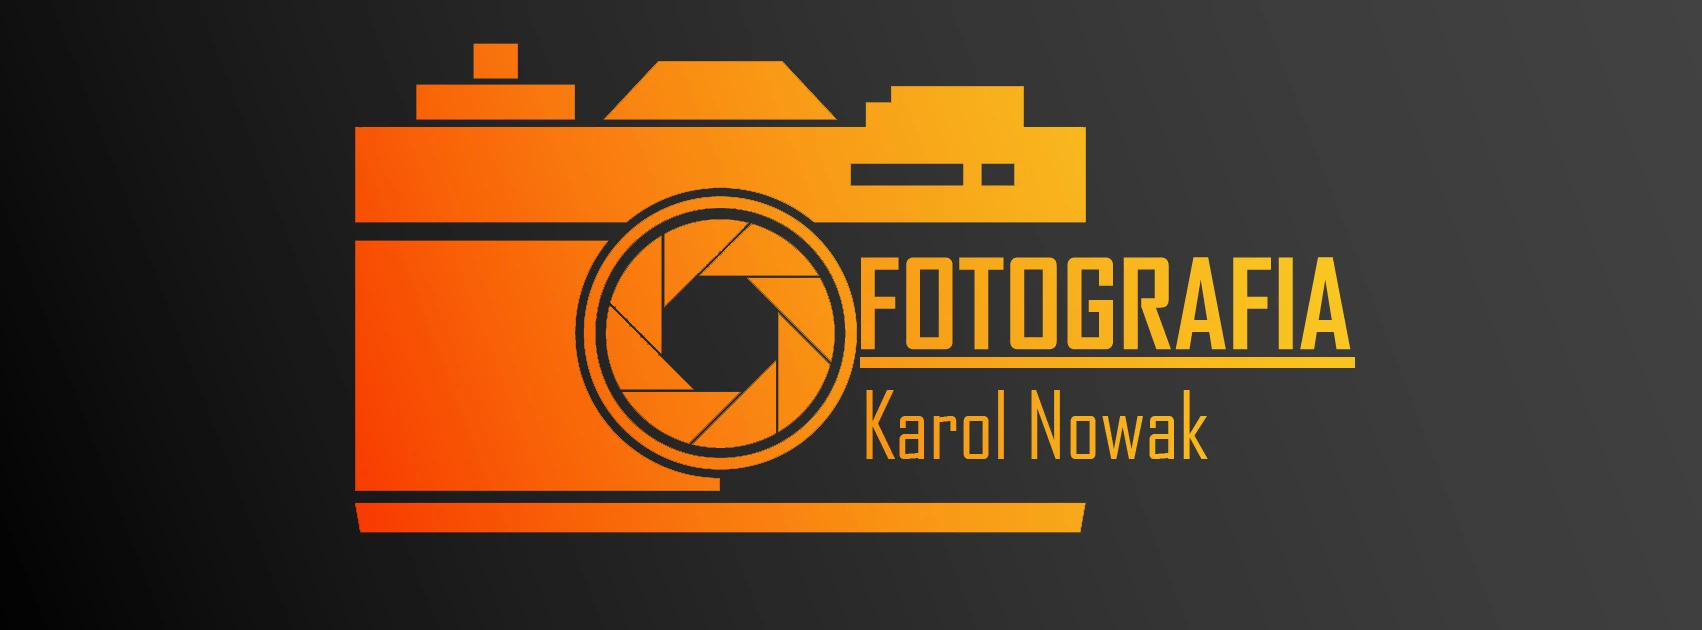 portfolio zdjecia znany fotograf karol-nowak